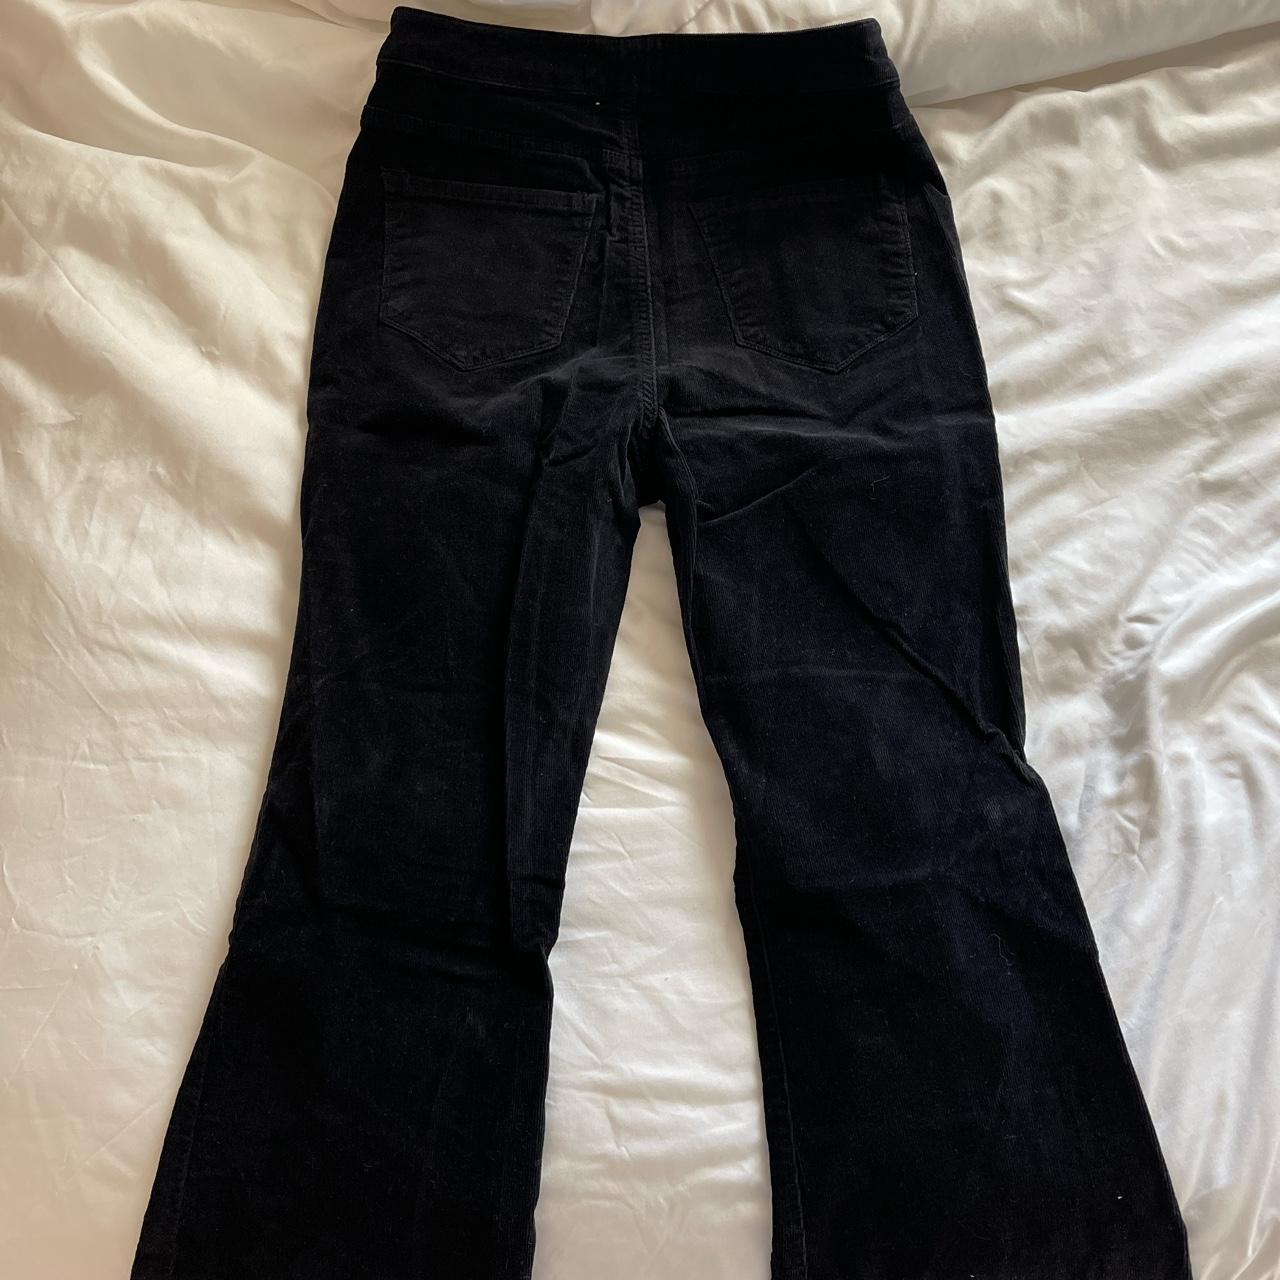 Velvet black bell bottom jeans - Depop